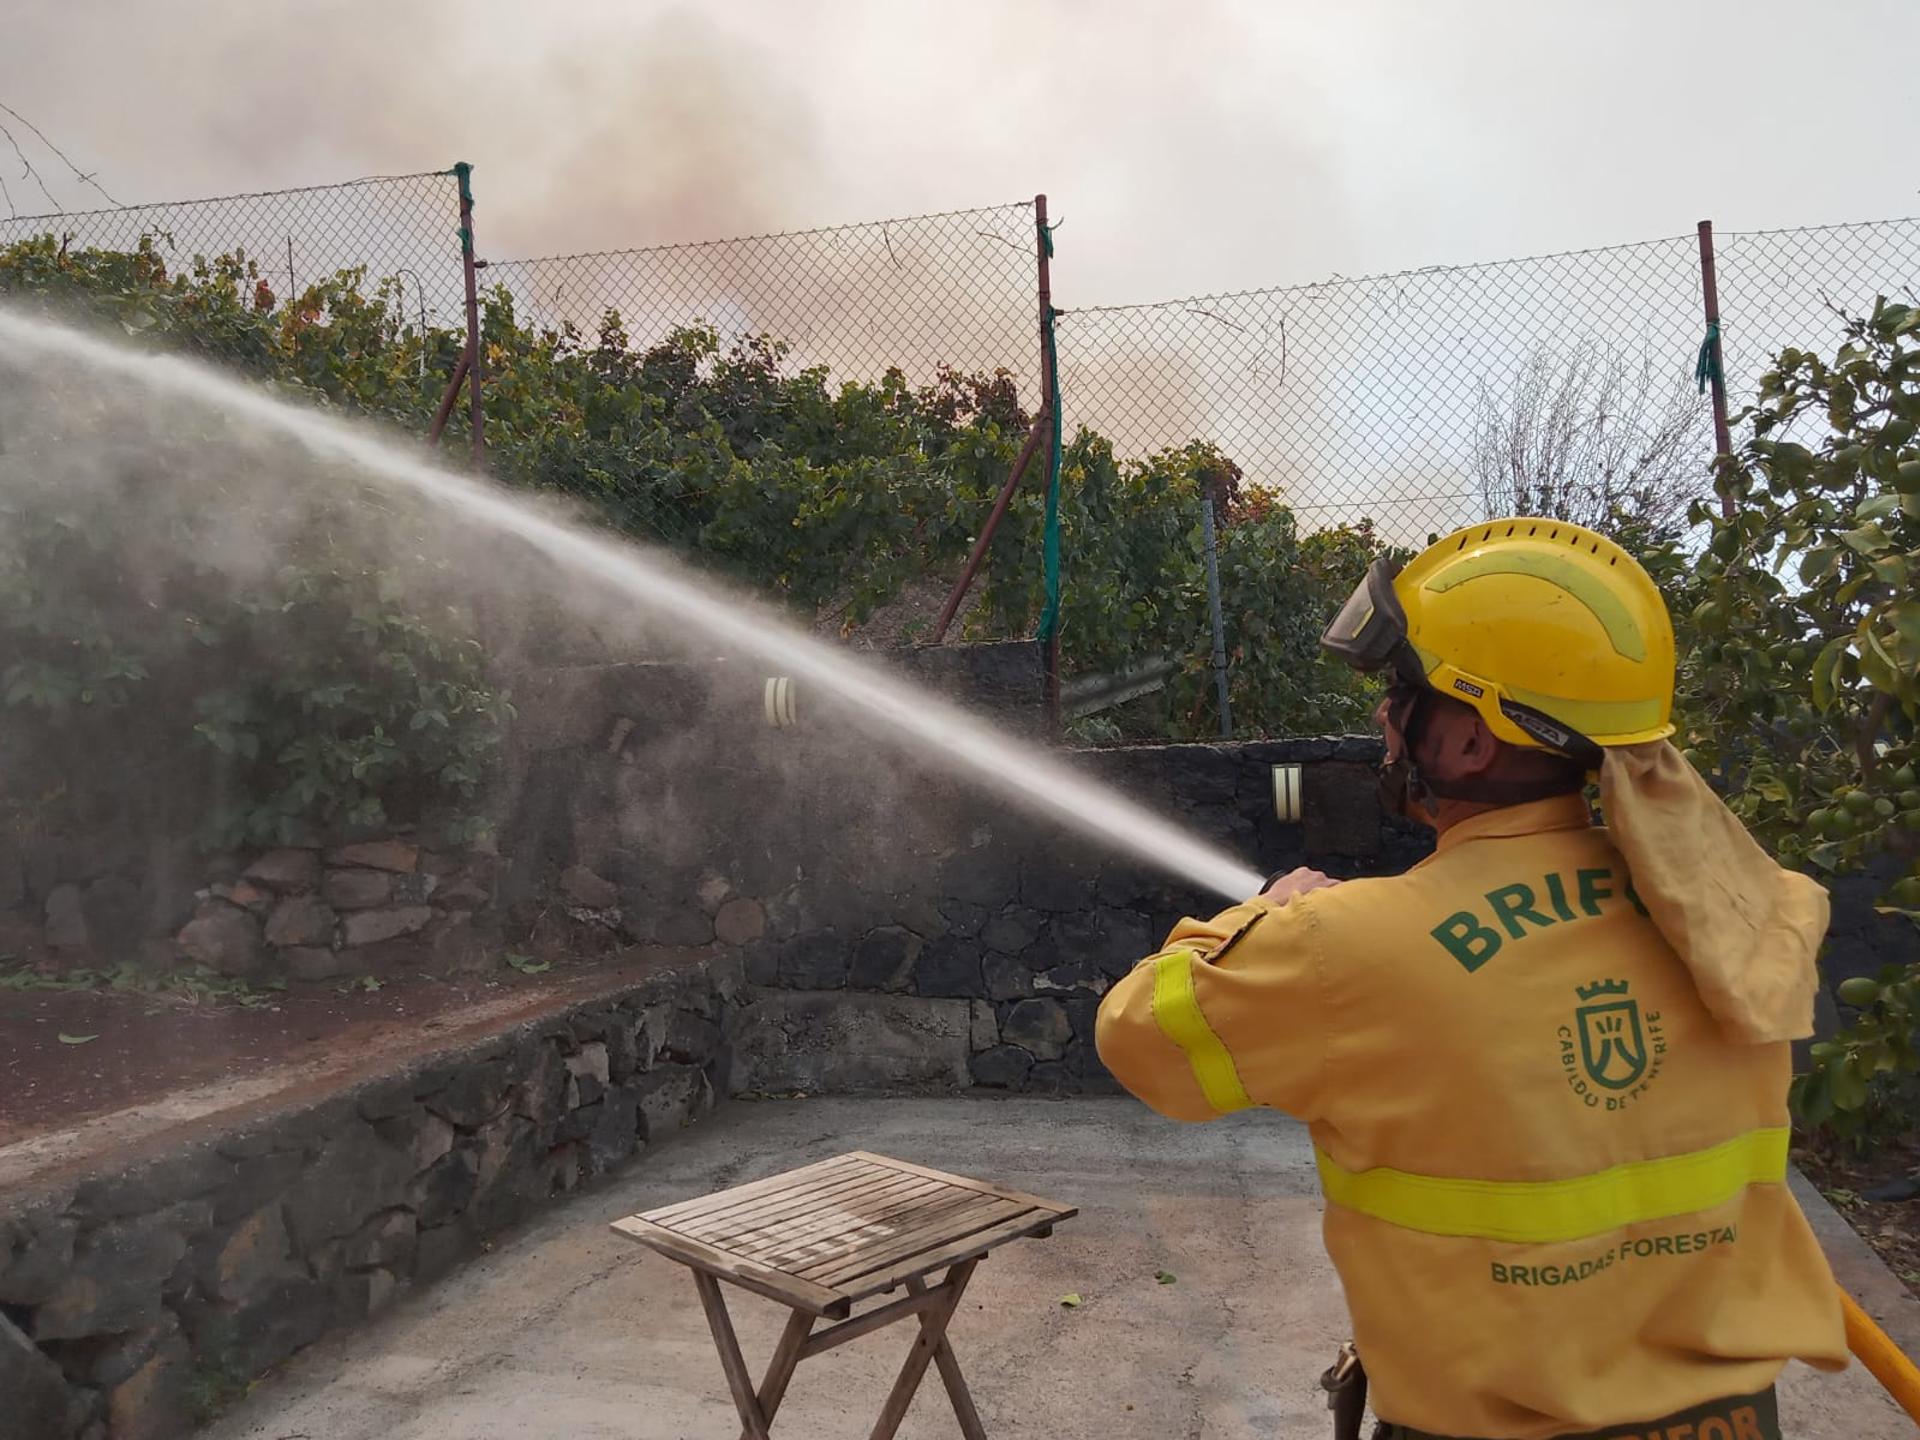 Un miembro de las Brigadas Forestales del Cabildo de Tenerife trabaja en la zona de la reactivación del incendio. EFE/Cabildo de Tenerife